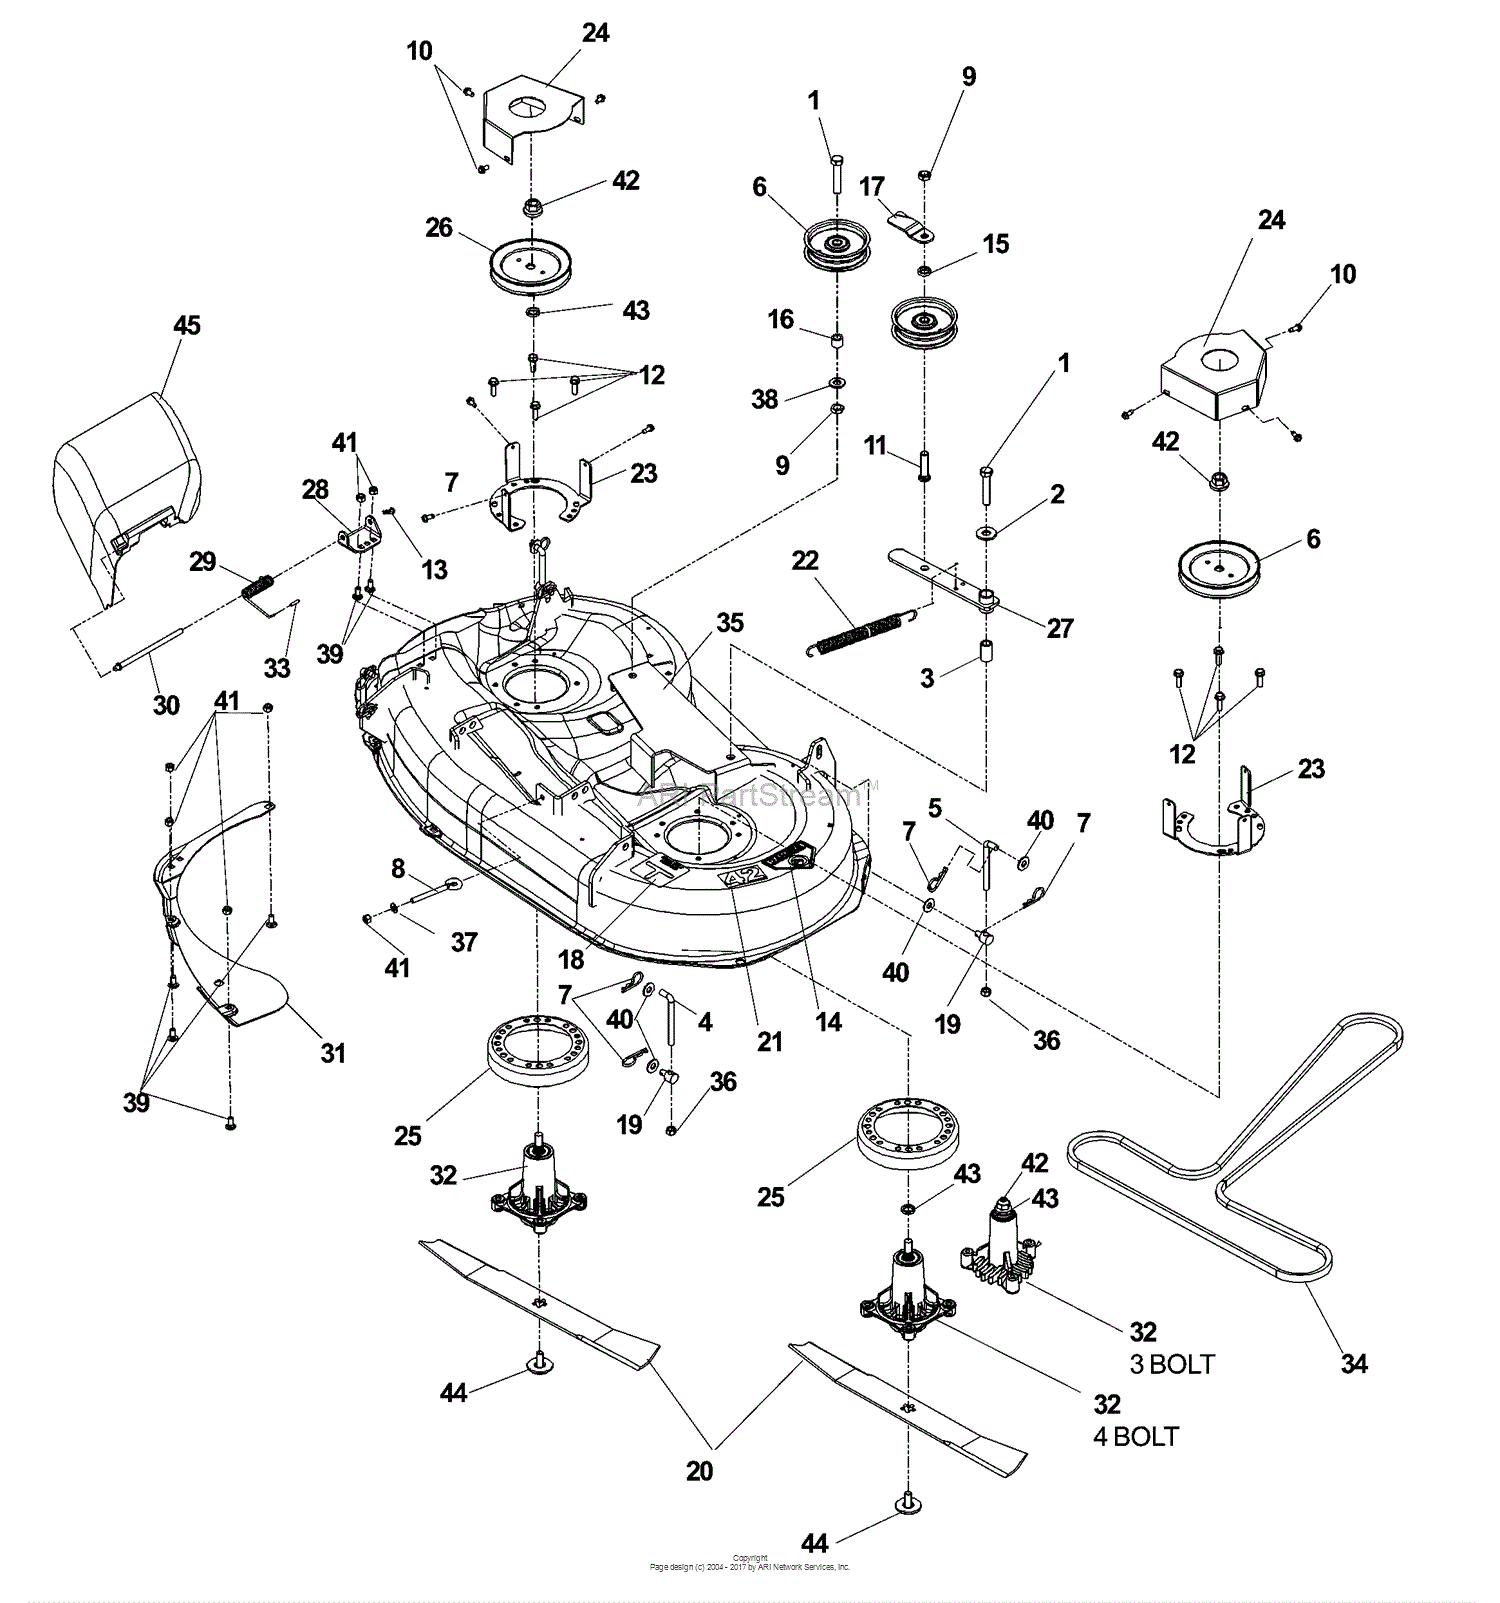 Dixon SPEEDZTR 42 - 968999546 (2007) Parts Diagram for 42 INCH CUTTING DECK